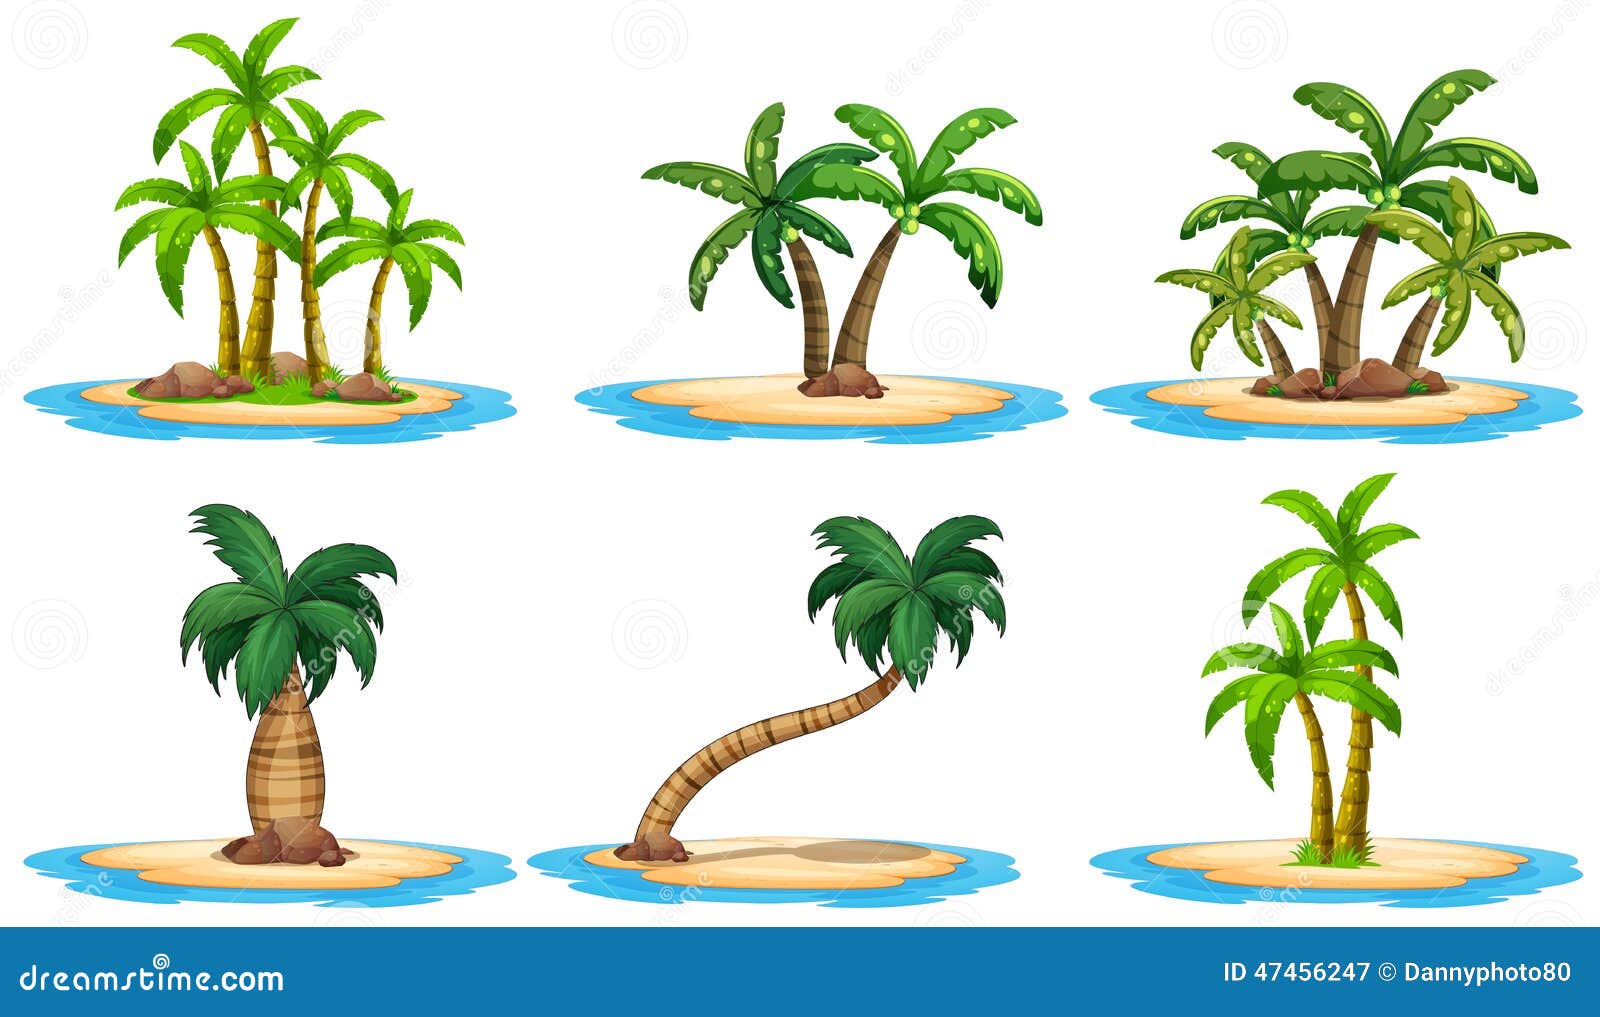 illustration stock îles et palmier image